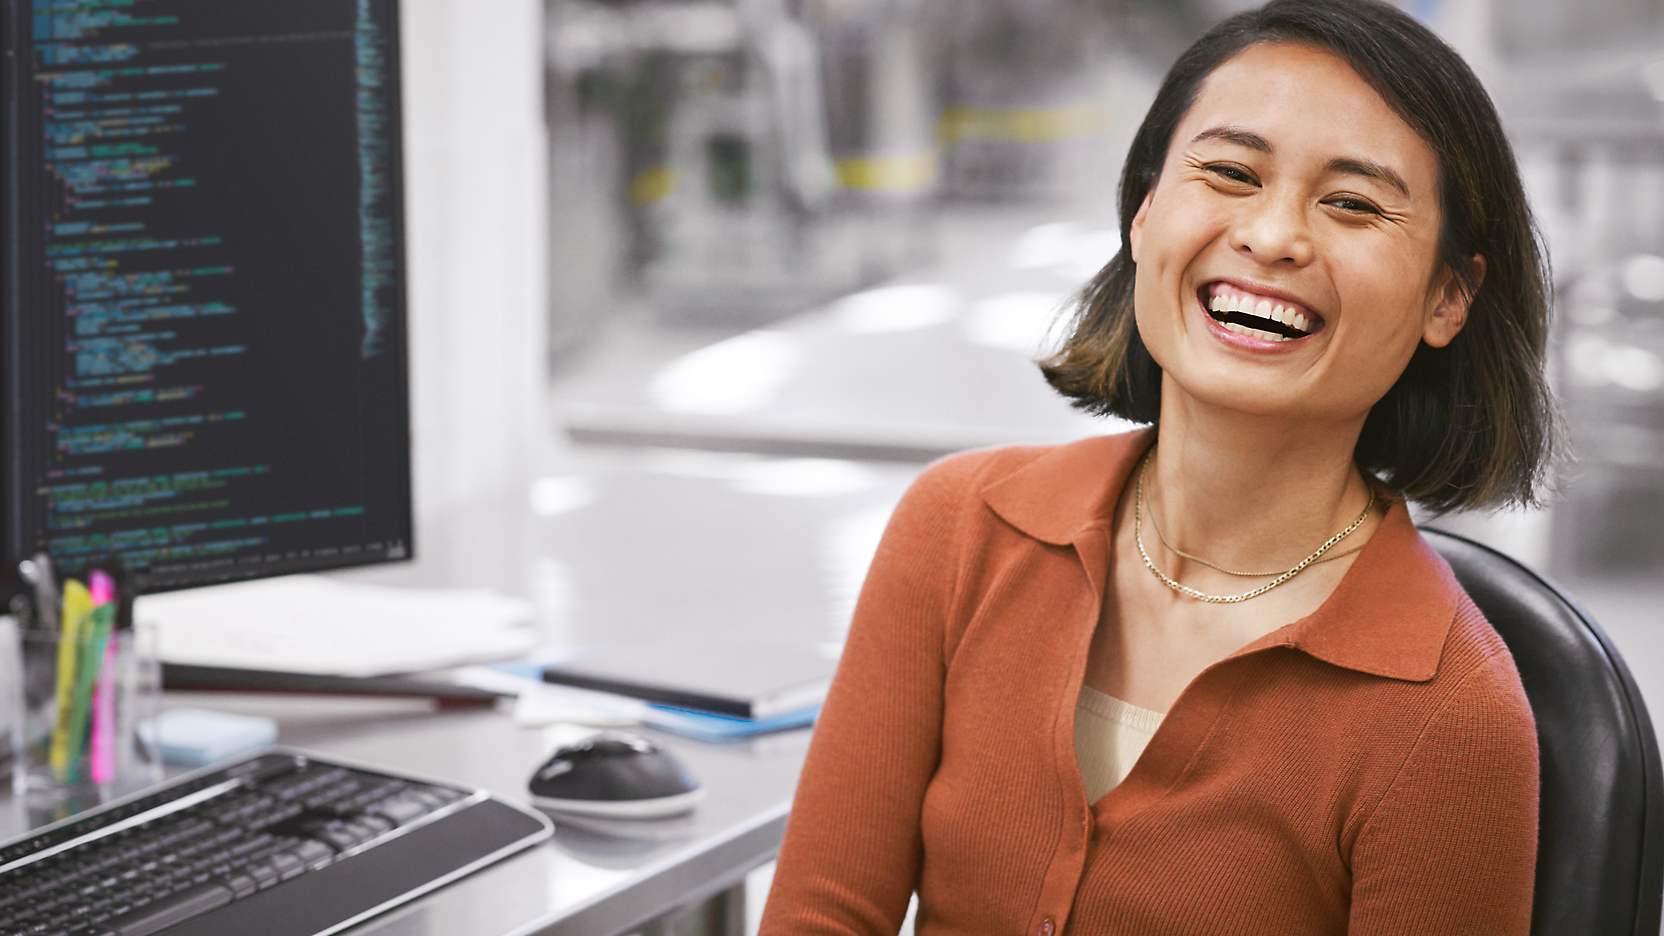 Veselá žena sedící v moderním kancelářském prostředí u stolu s počítačem, který na obrazovce zobrazuje kód